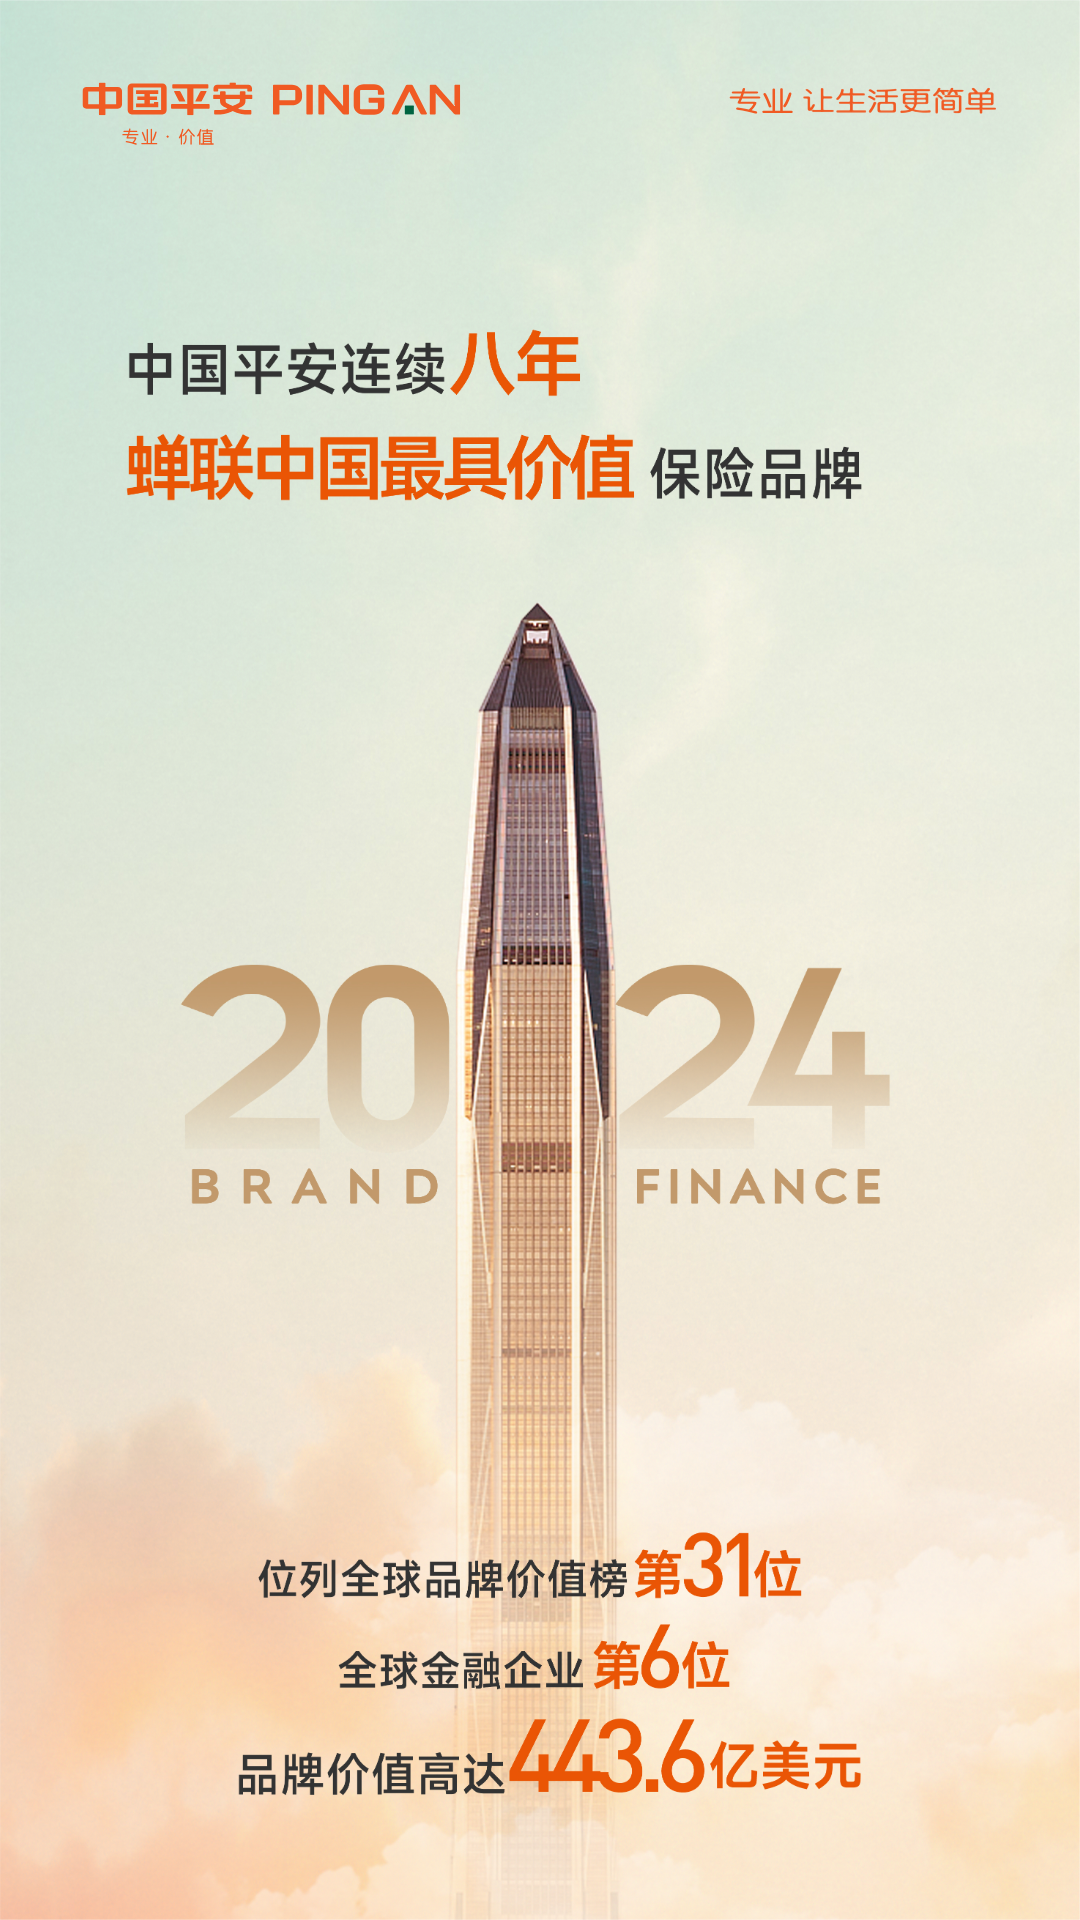 又一全球500强榜单发布,中国保险品牌第1位还是平安!